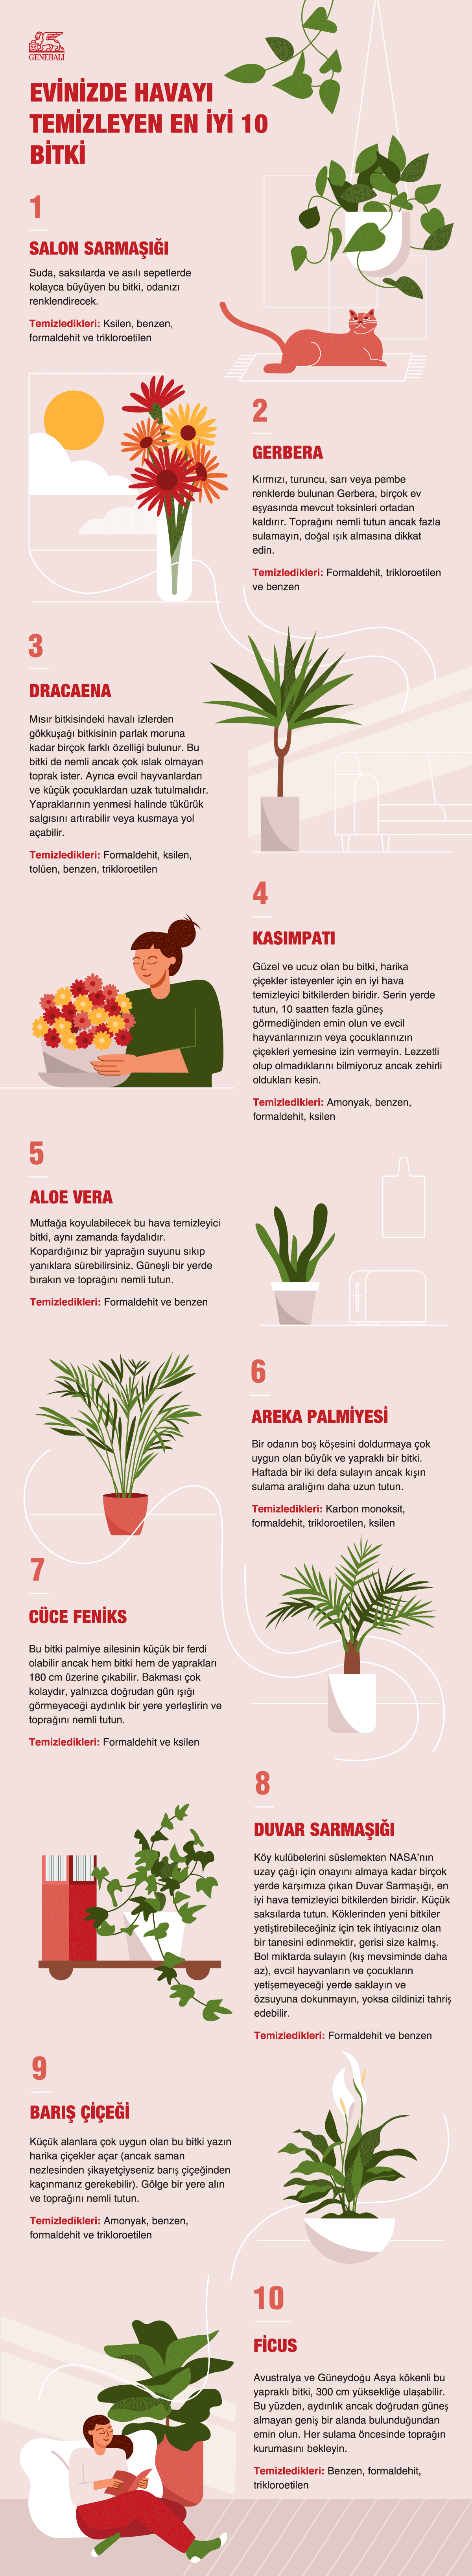 Evinizdeki havayı temizleyecek 10 bitki